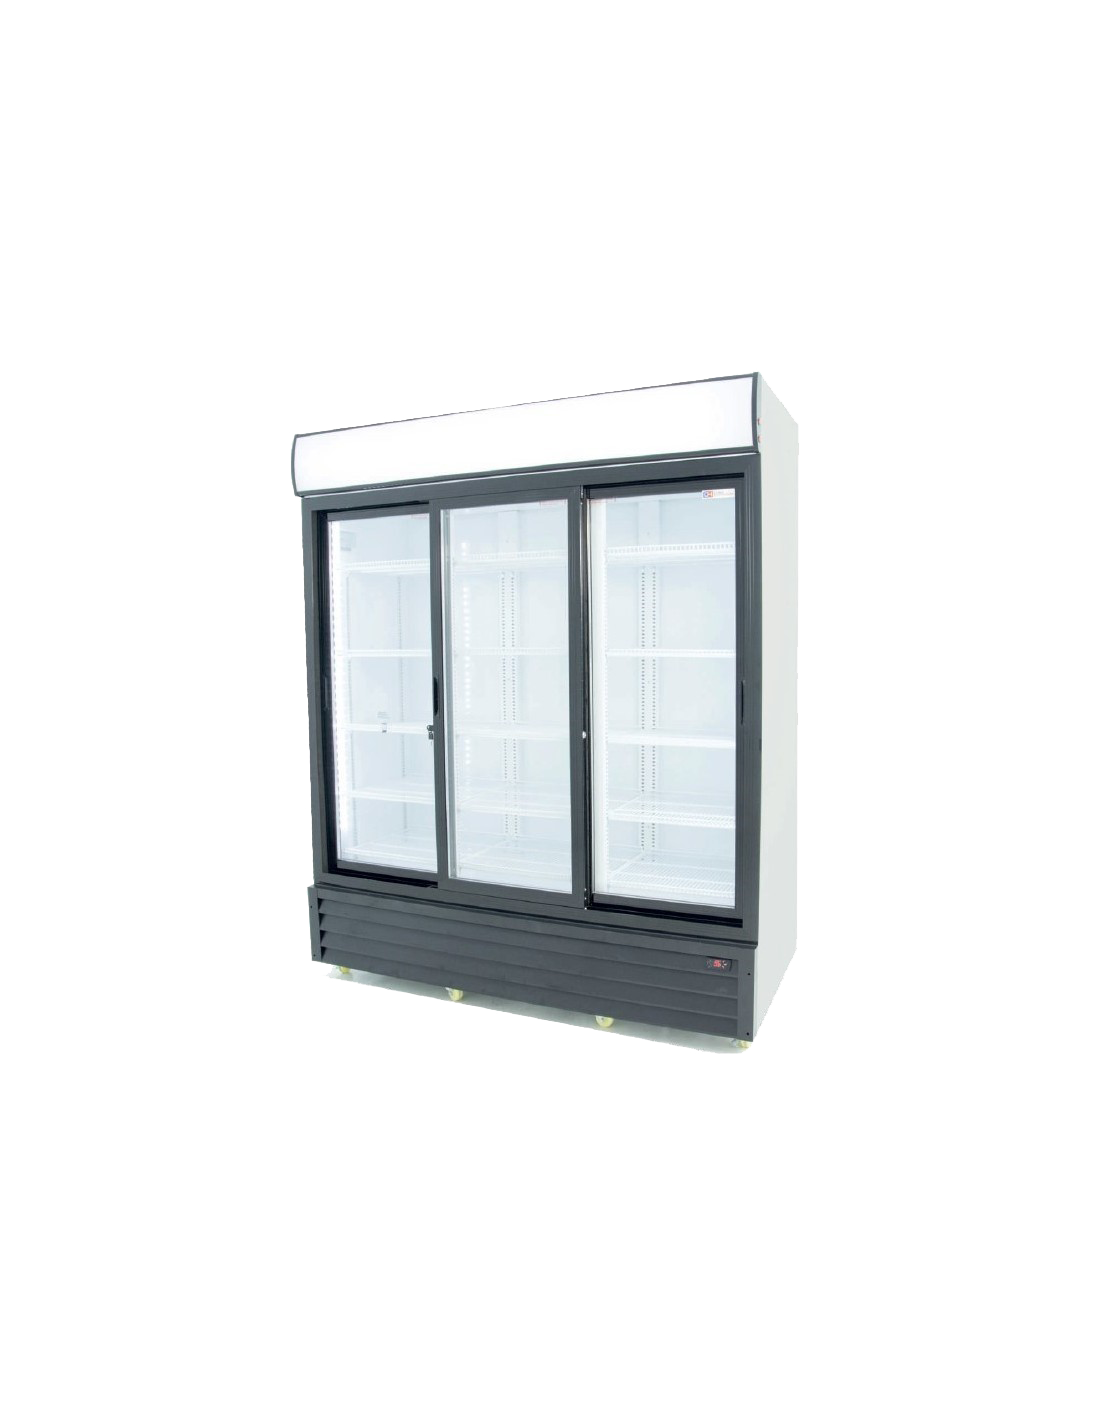 Armario Expositor Refrigerado1600 Litros con 3 Puertas Deslizantes Linea PEKIN